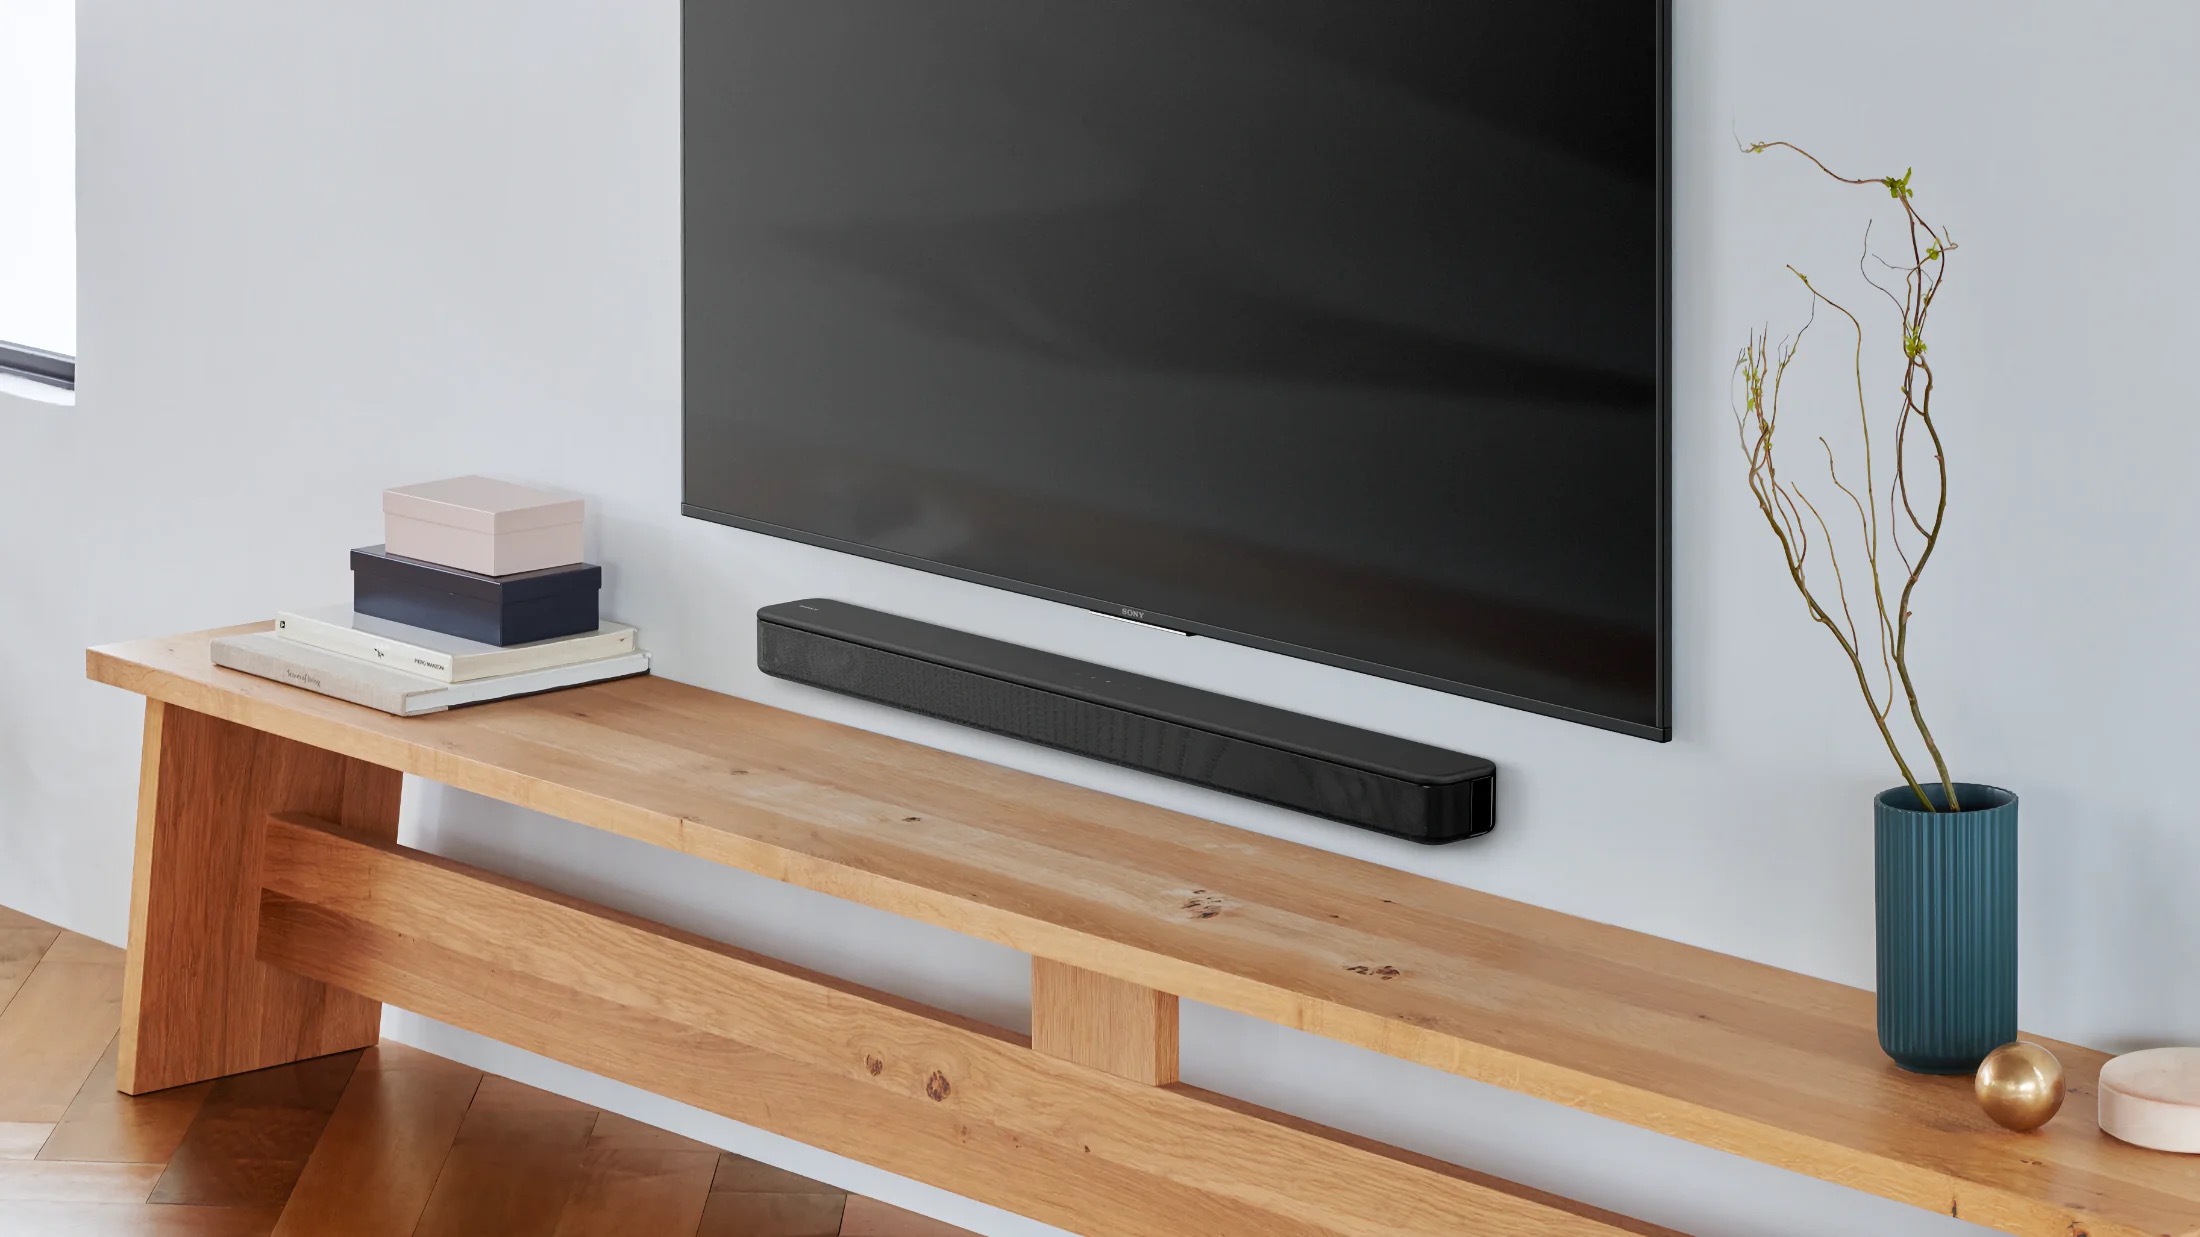 Altavoces para TV: ¿Qué puedo comprar para mejorar el sonido de mi TV?